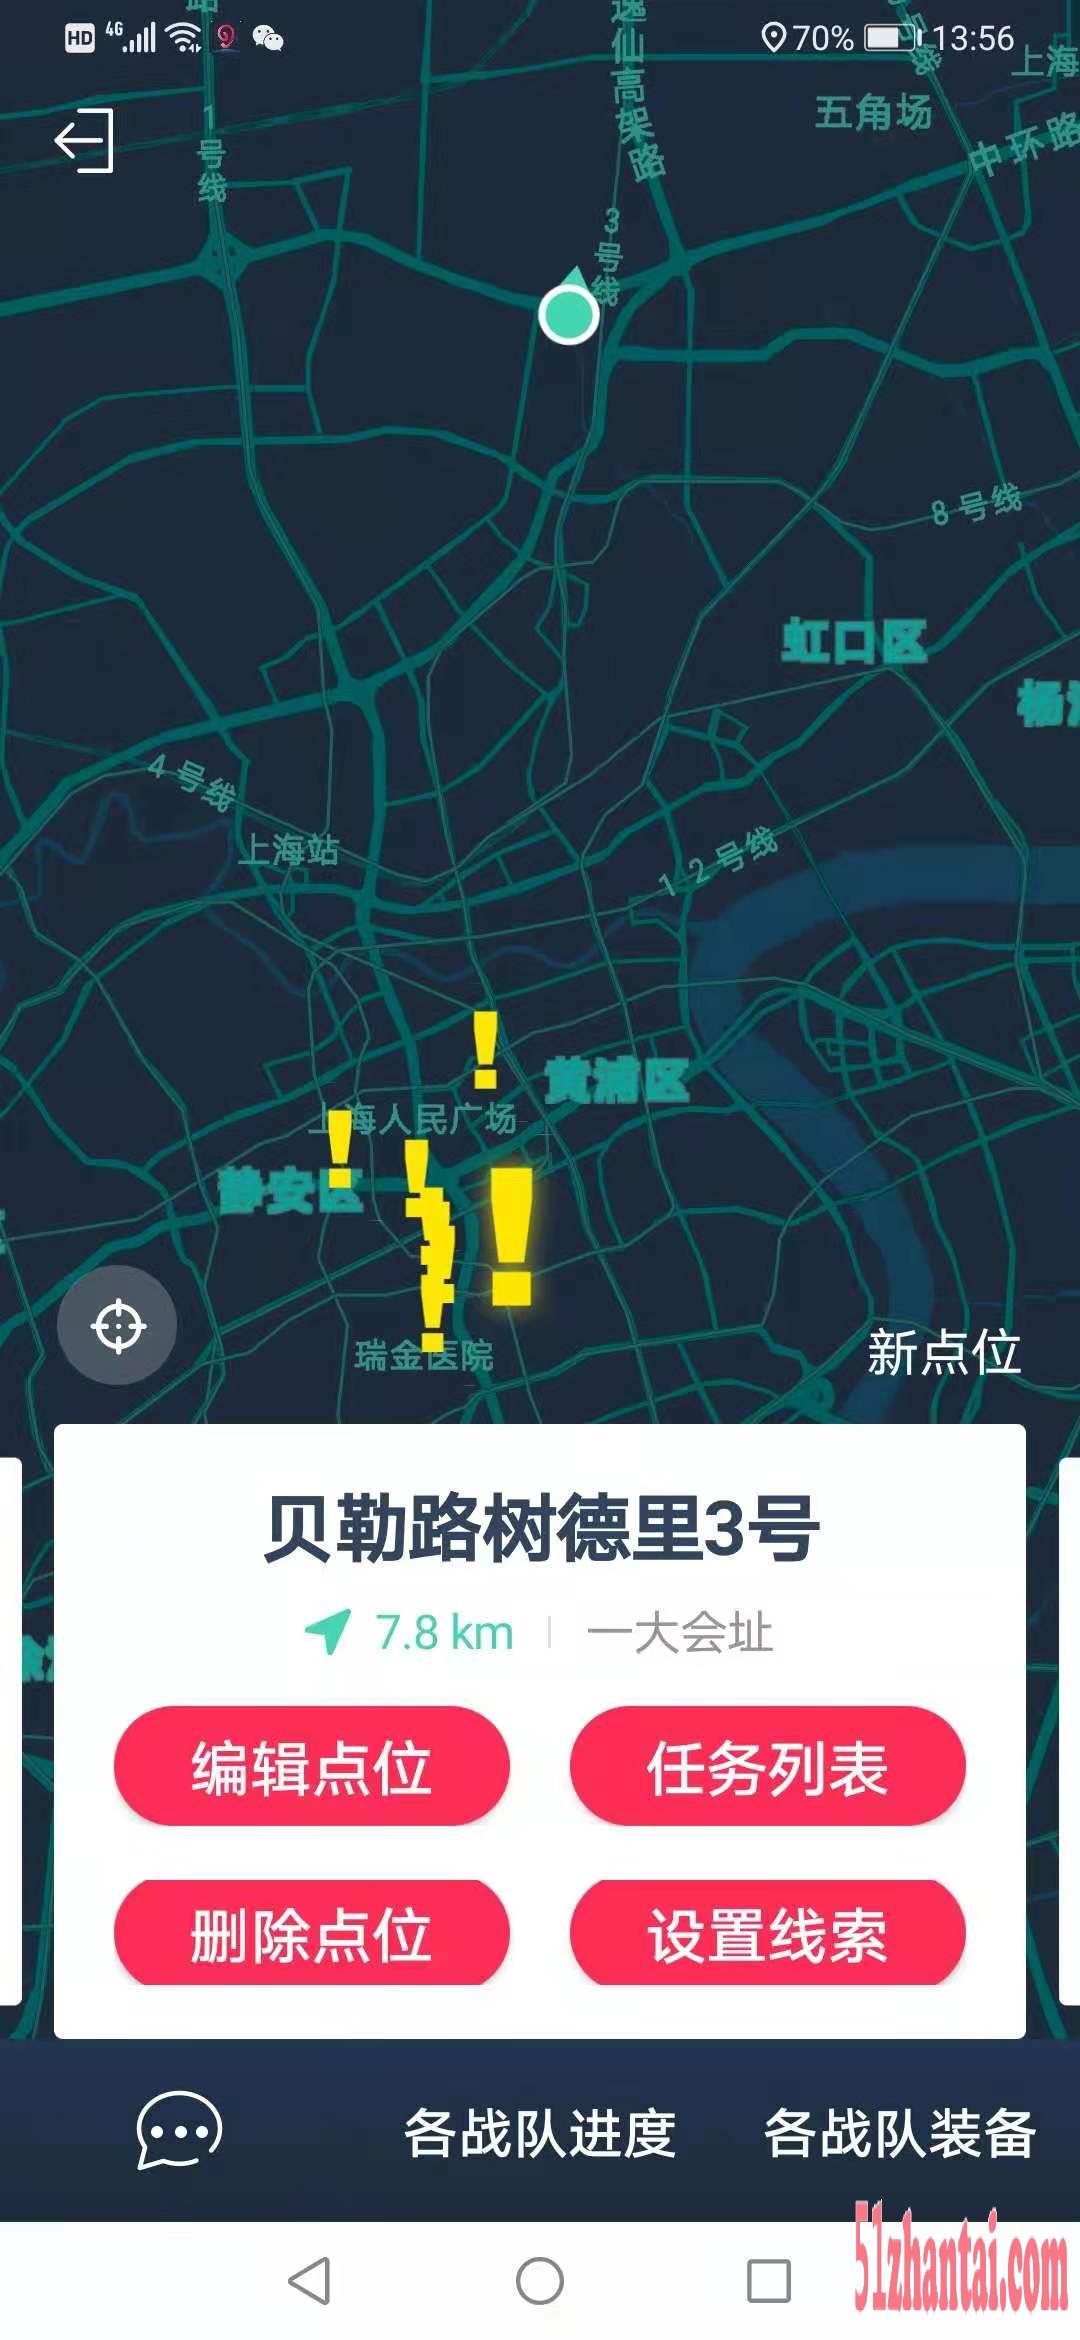 上海建党100周年活动安排党建主题拓展重走长征路-图3